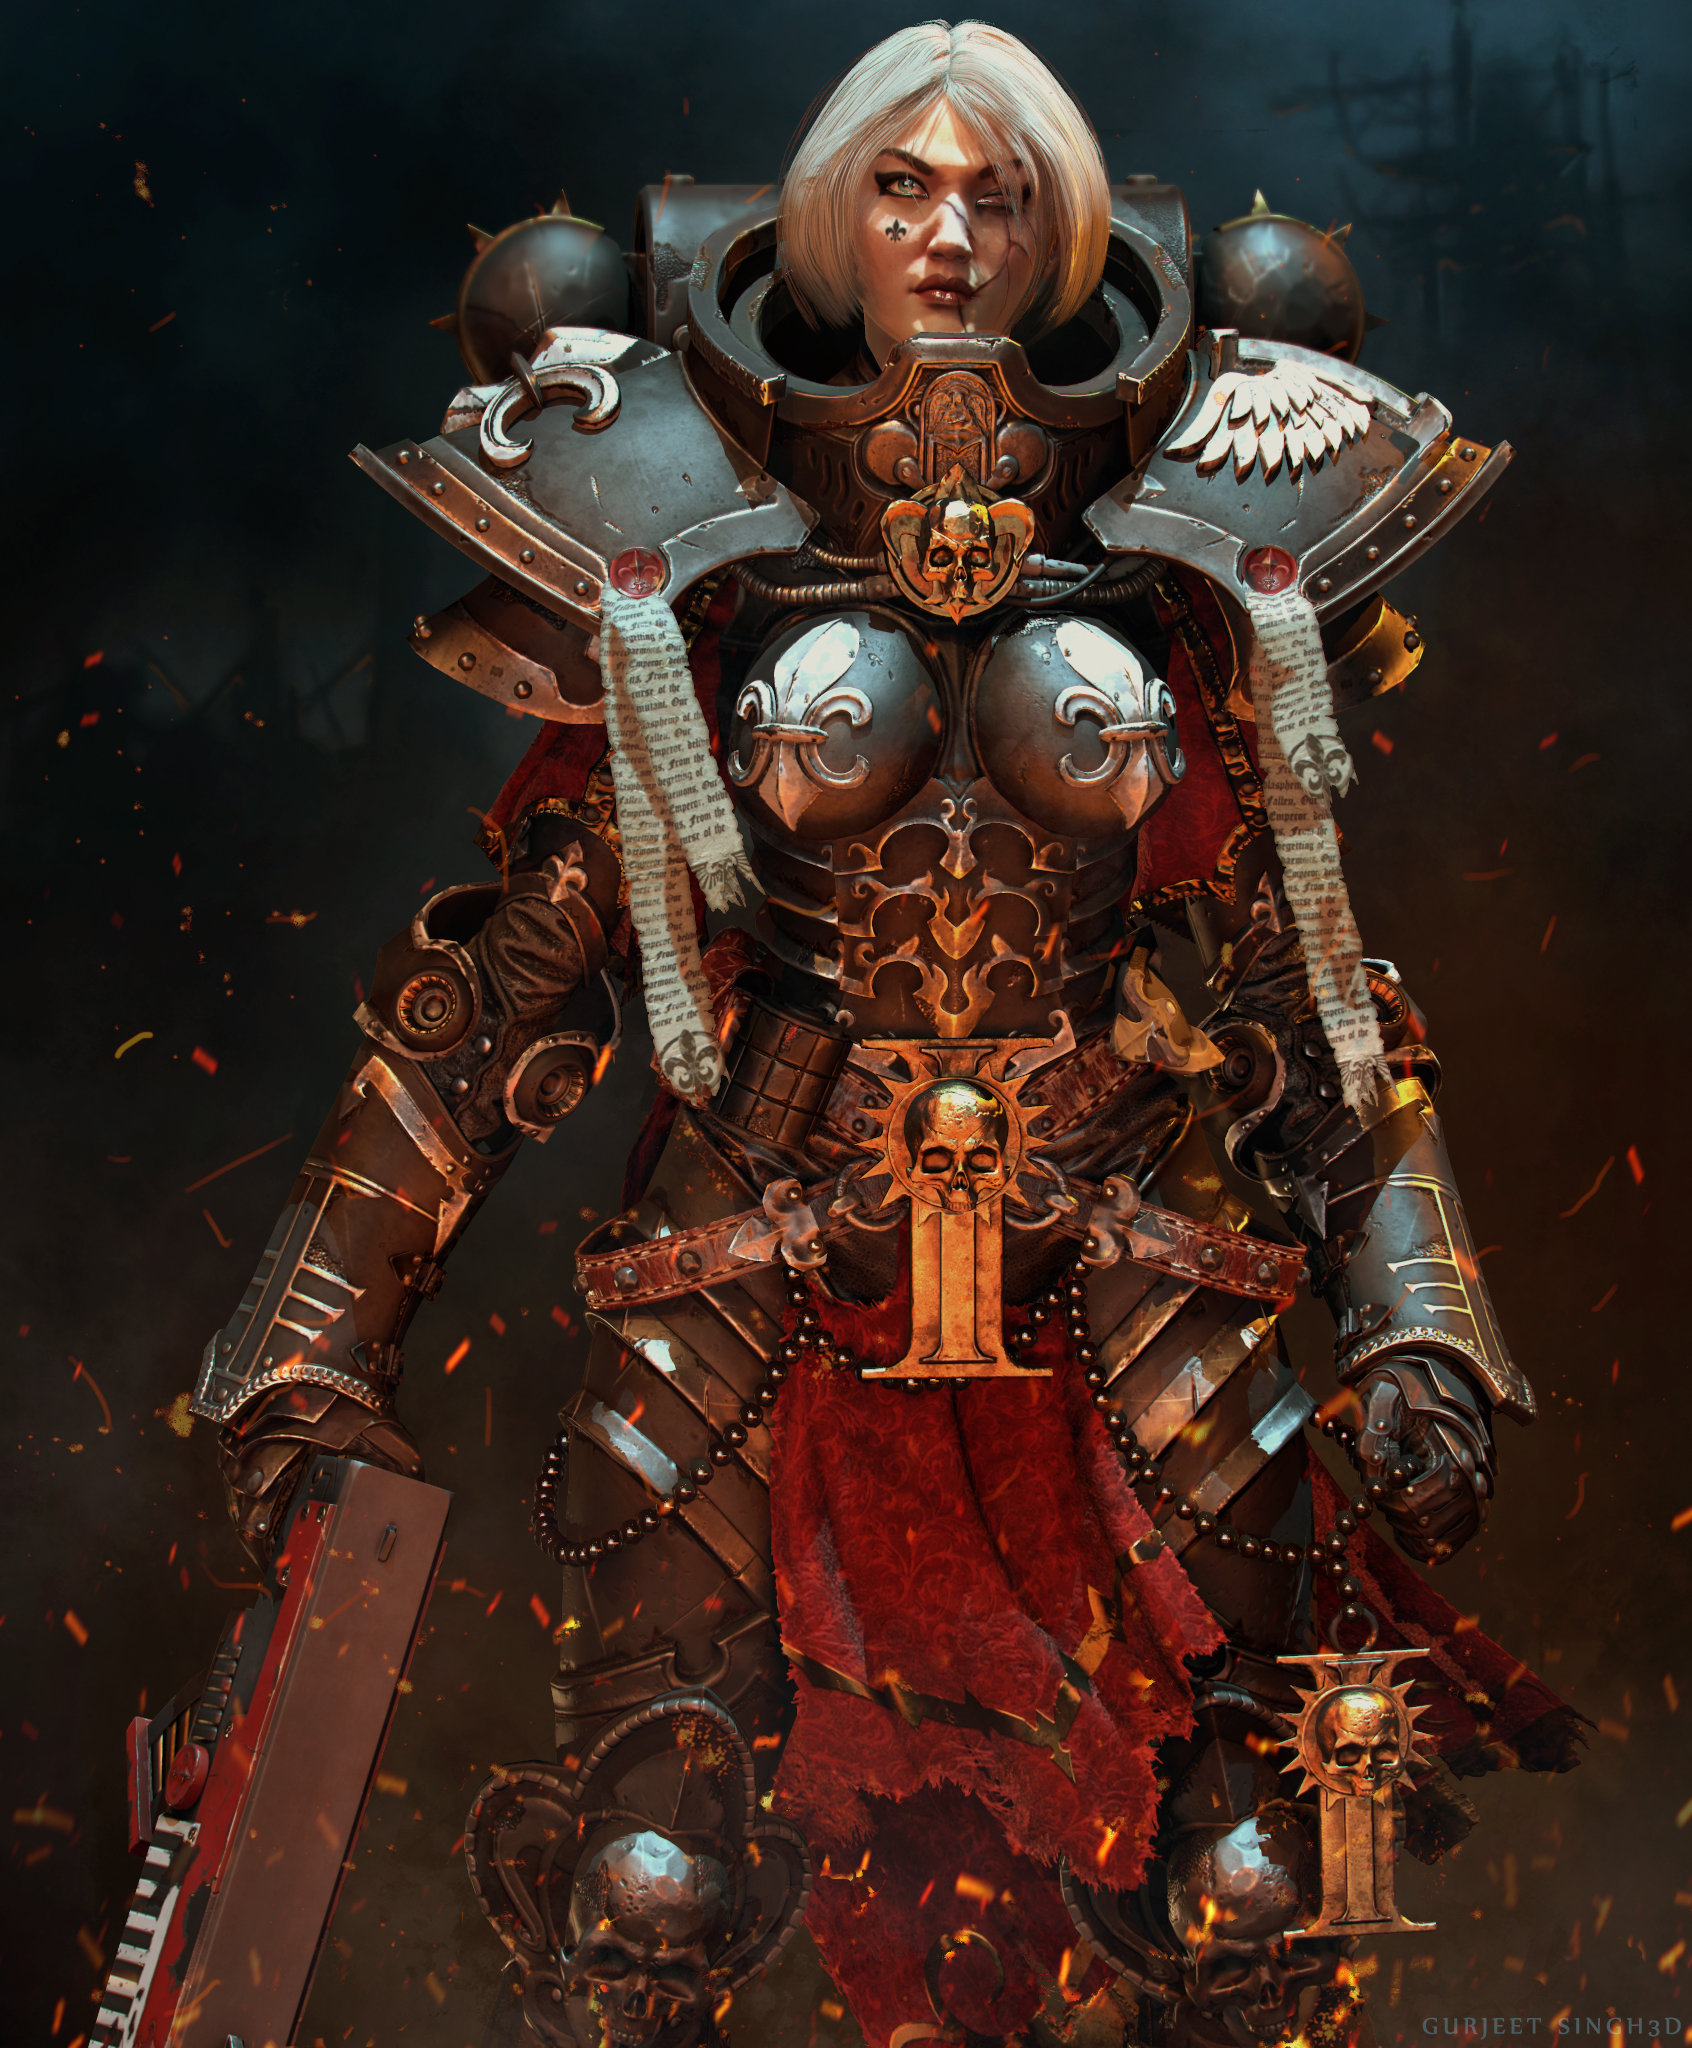 Sister of battle ( warhammer 40k ) fan art , Gurjeet singh.